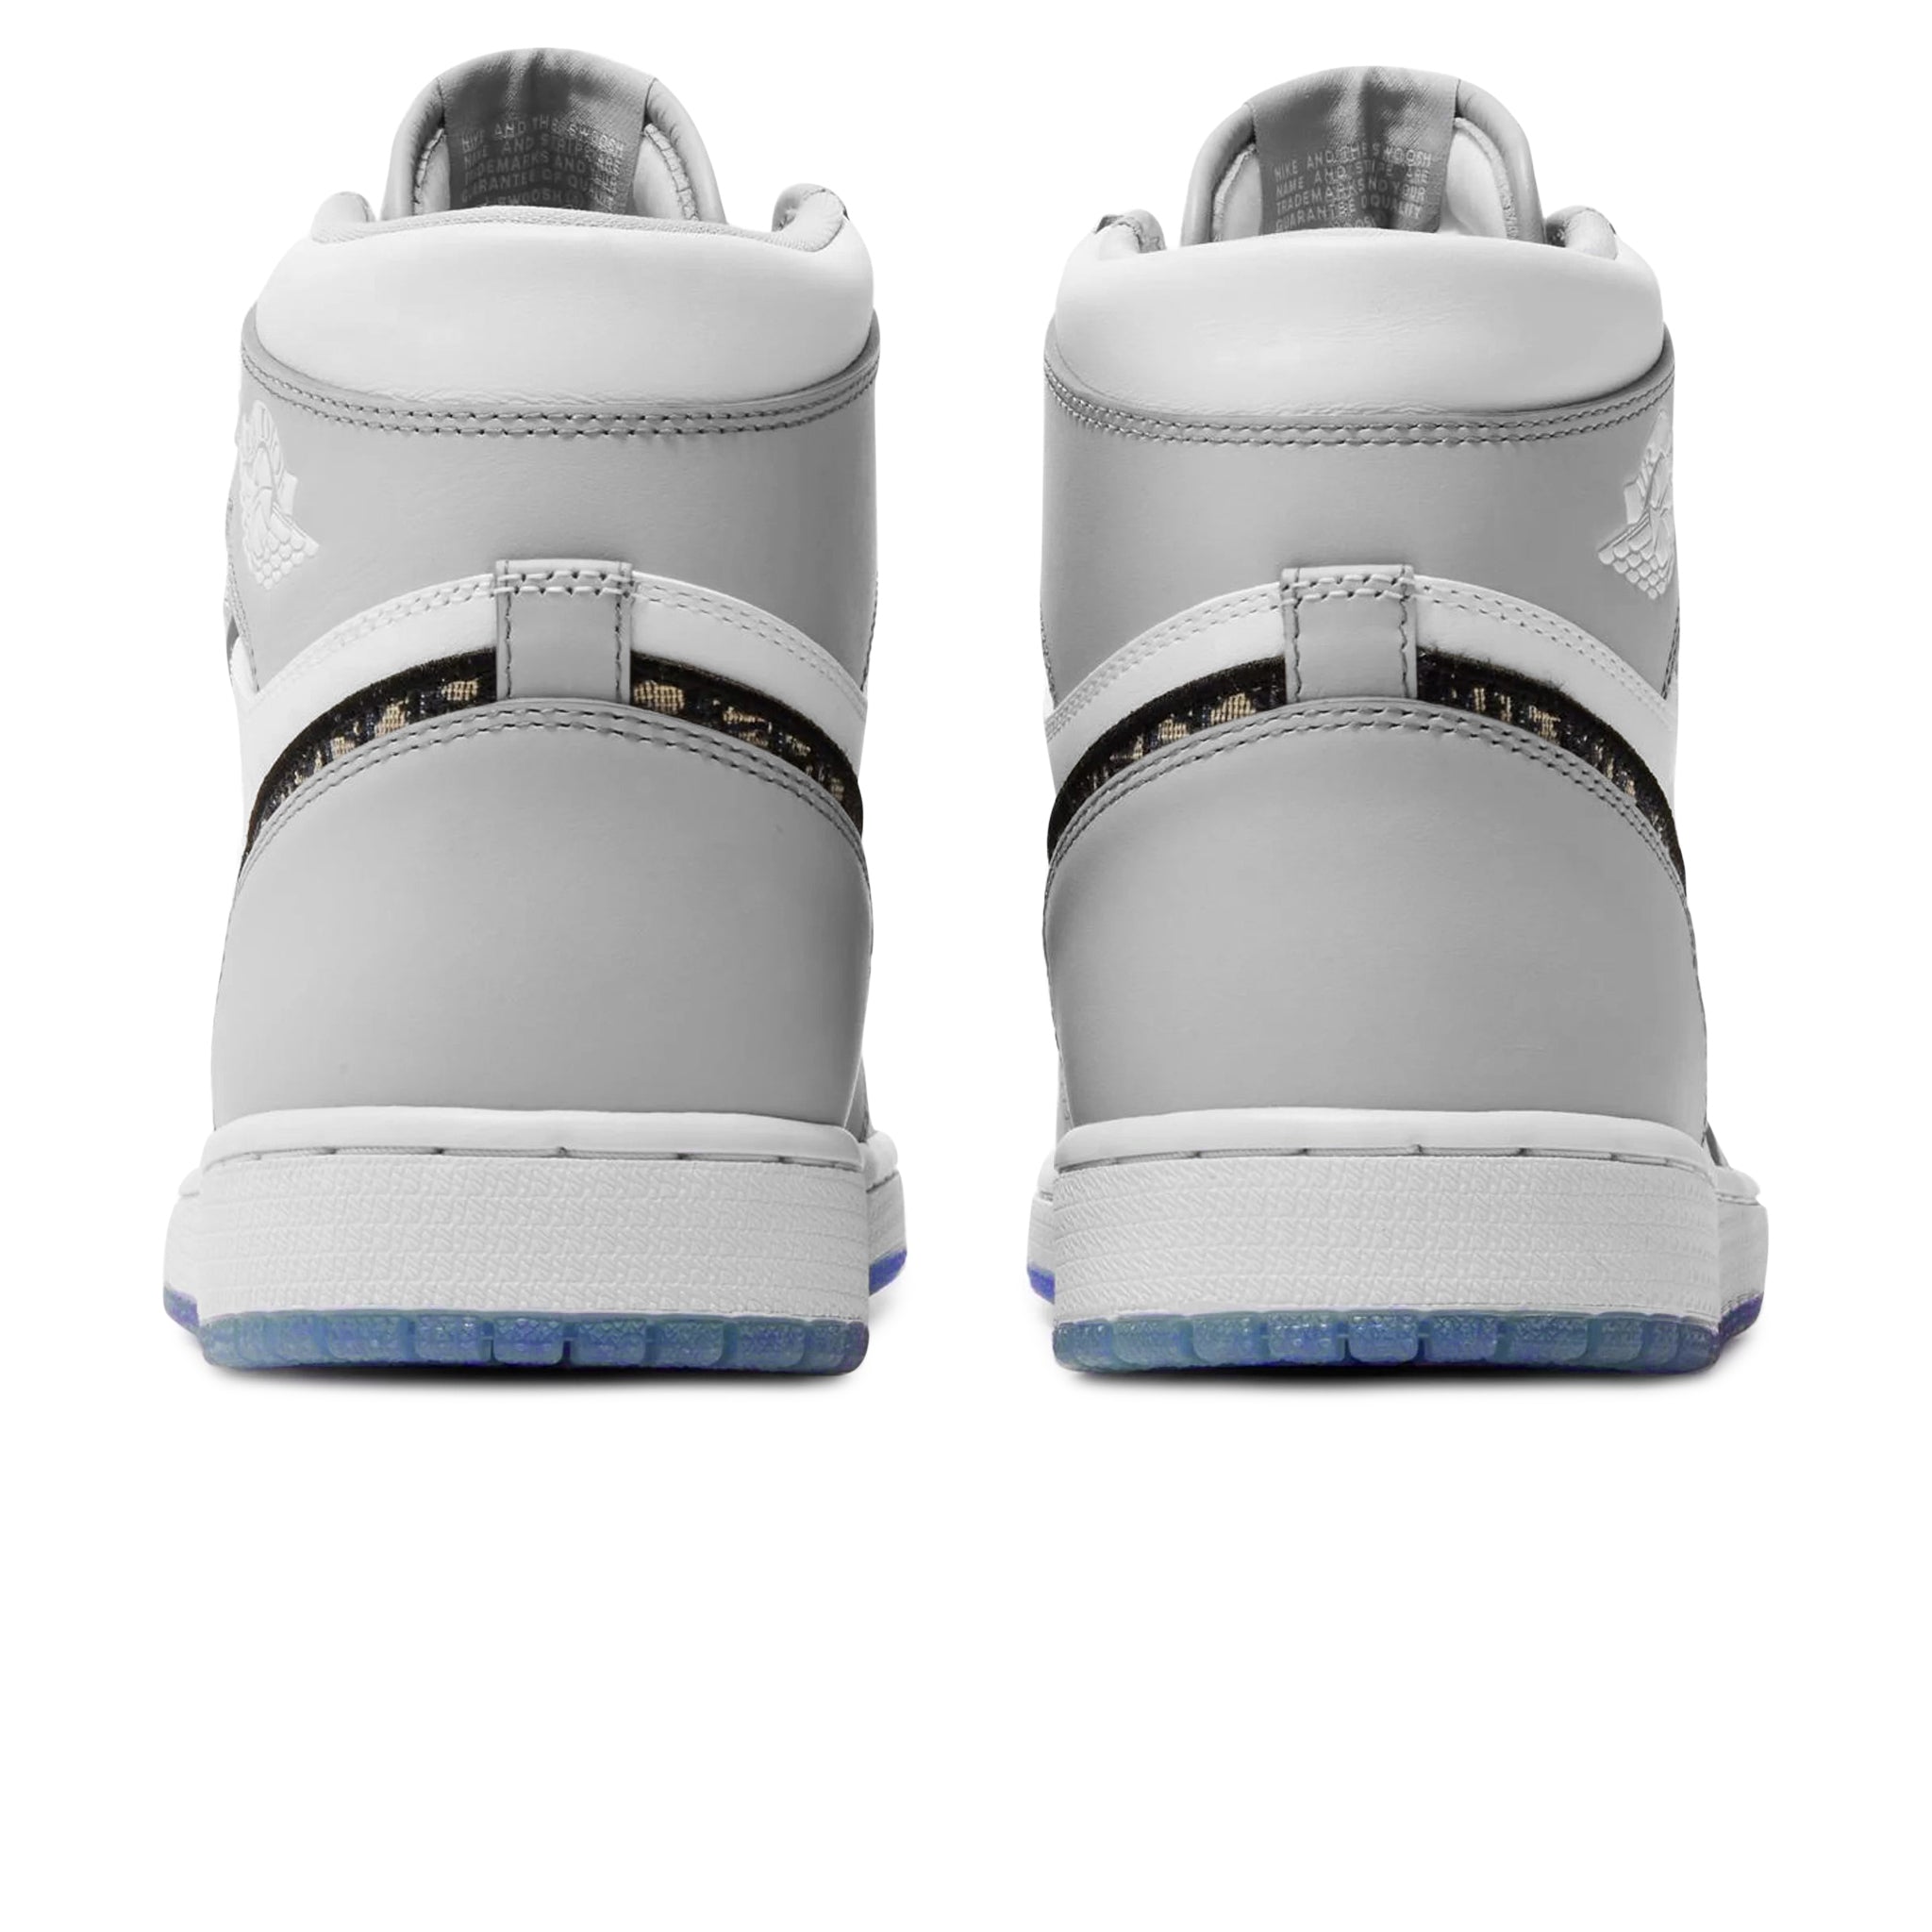 Image of Dior x Air Jordan 1 High OG Grey Sneaker